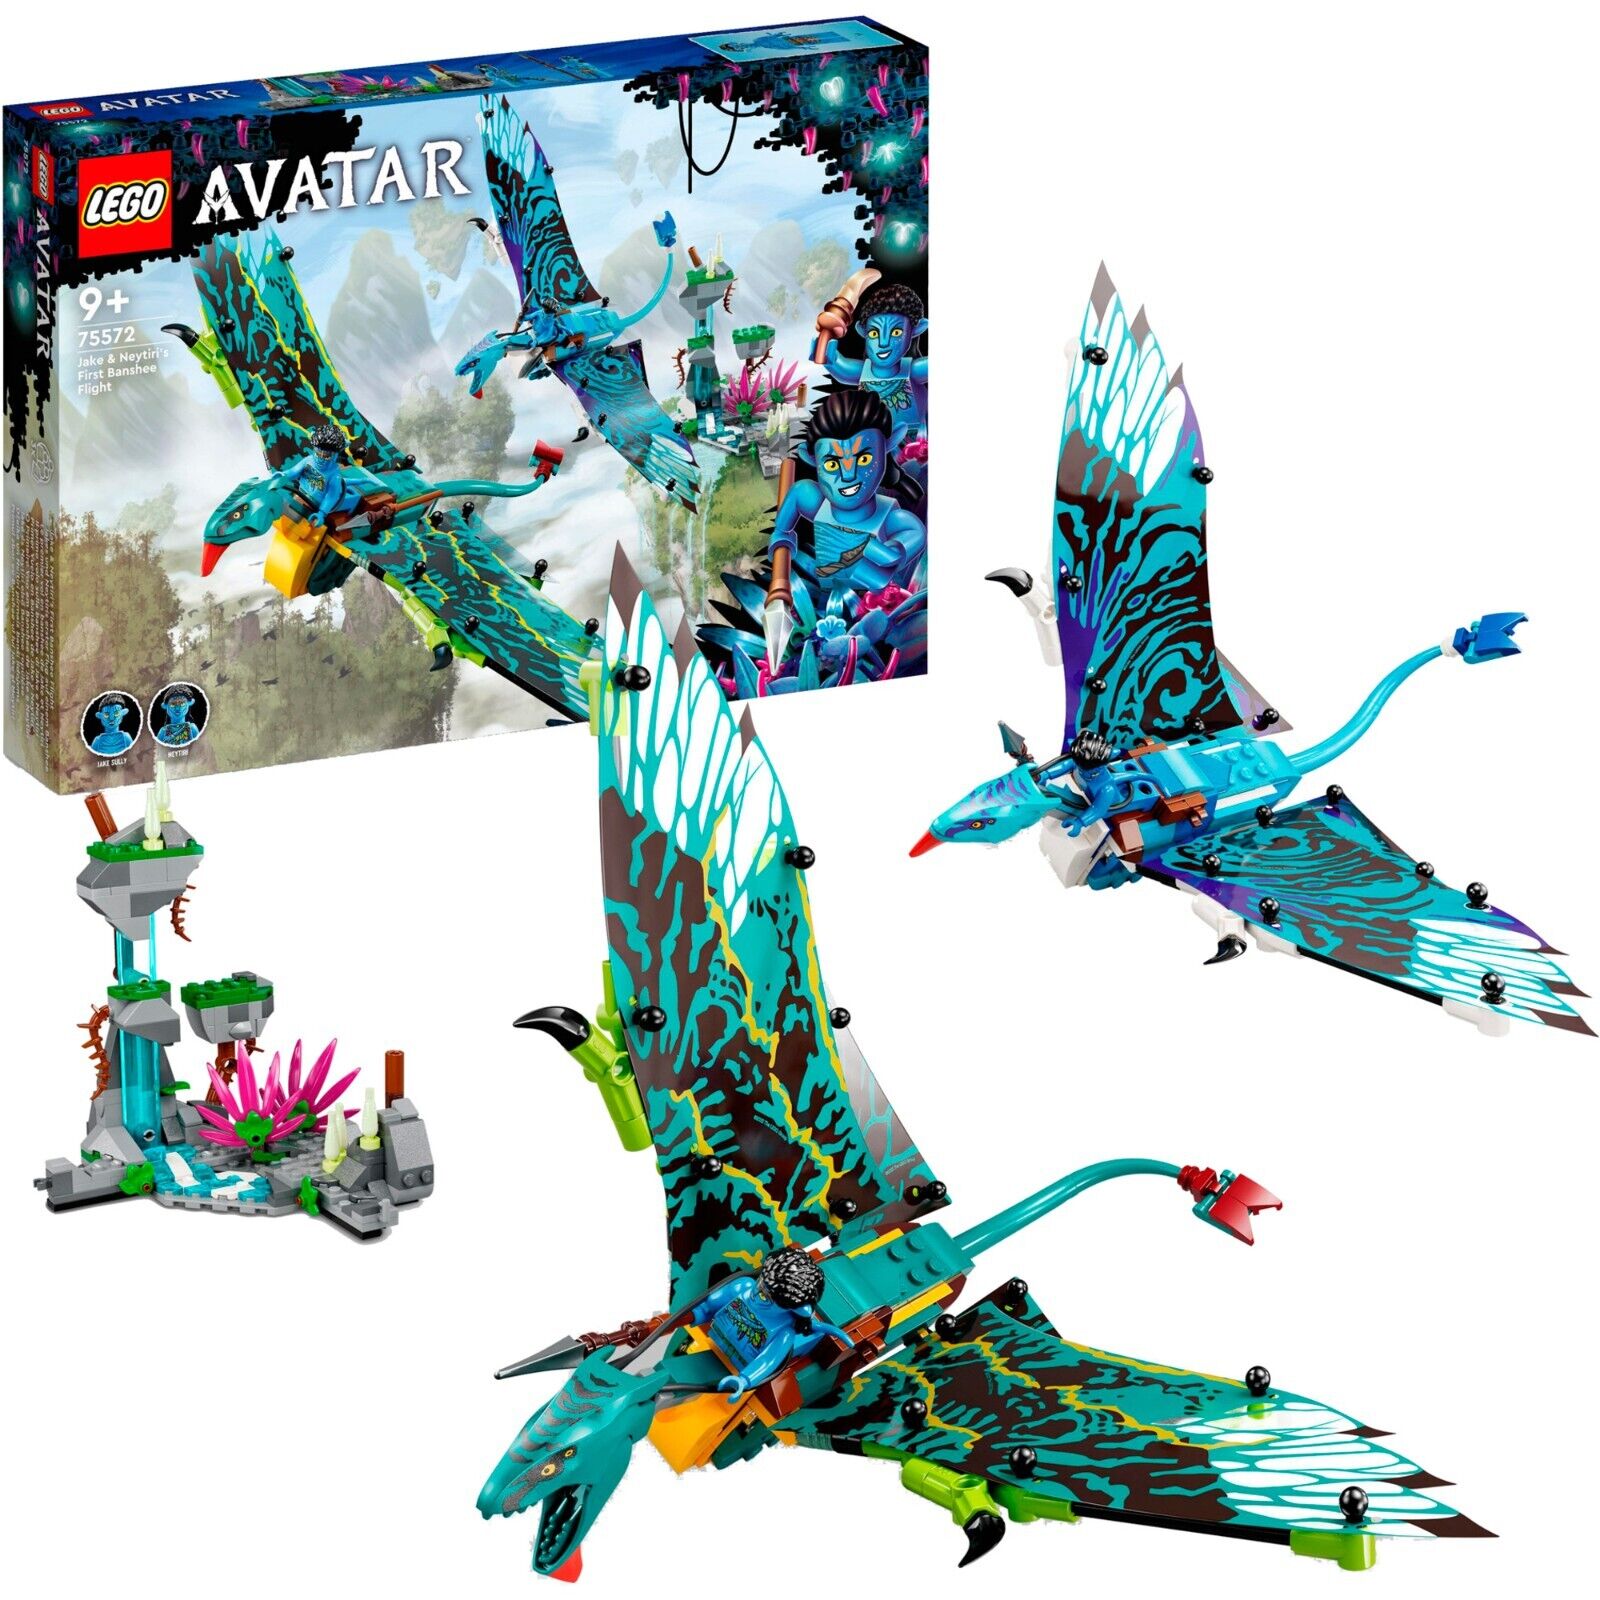 Bild zu Lego Avatar Jake und Neytiris erster Flug auf einem Banshee (75572) für 32,99€ (Vergleich: 40,89€)